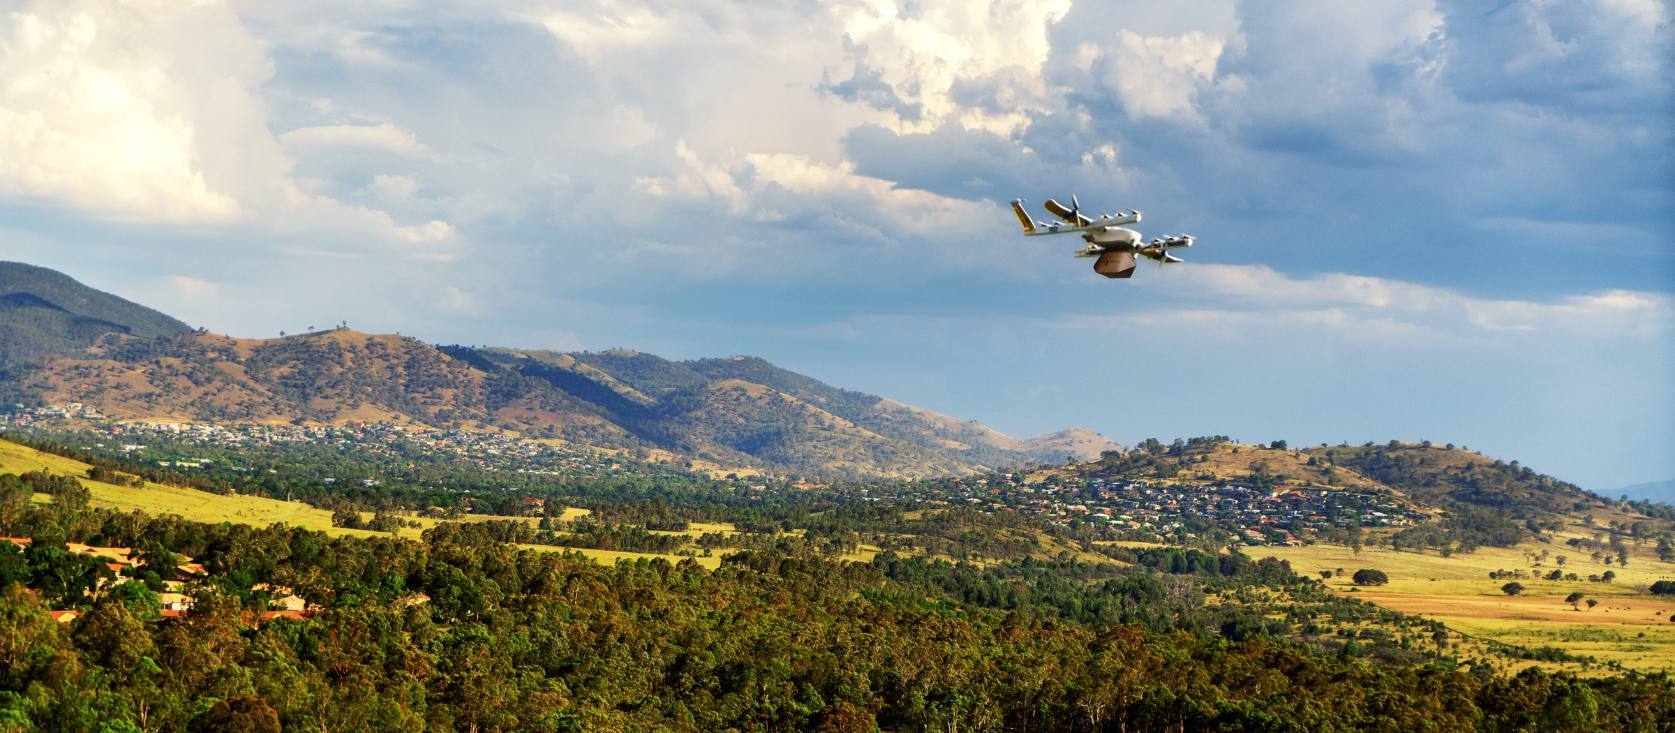 Livraison par drones : le projet Wing devient réalité